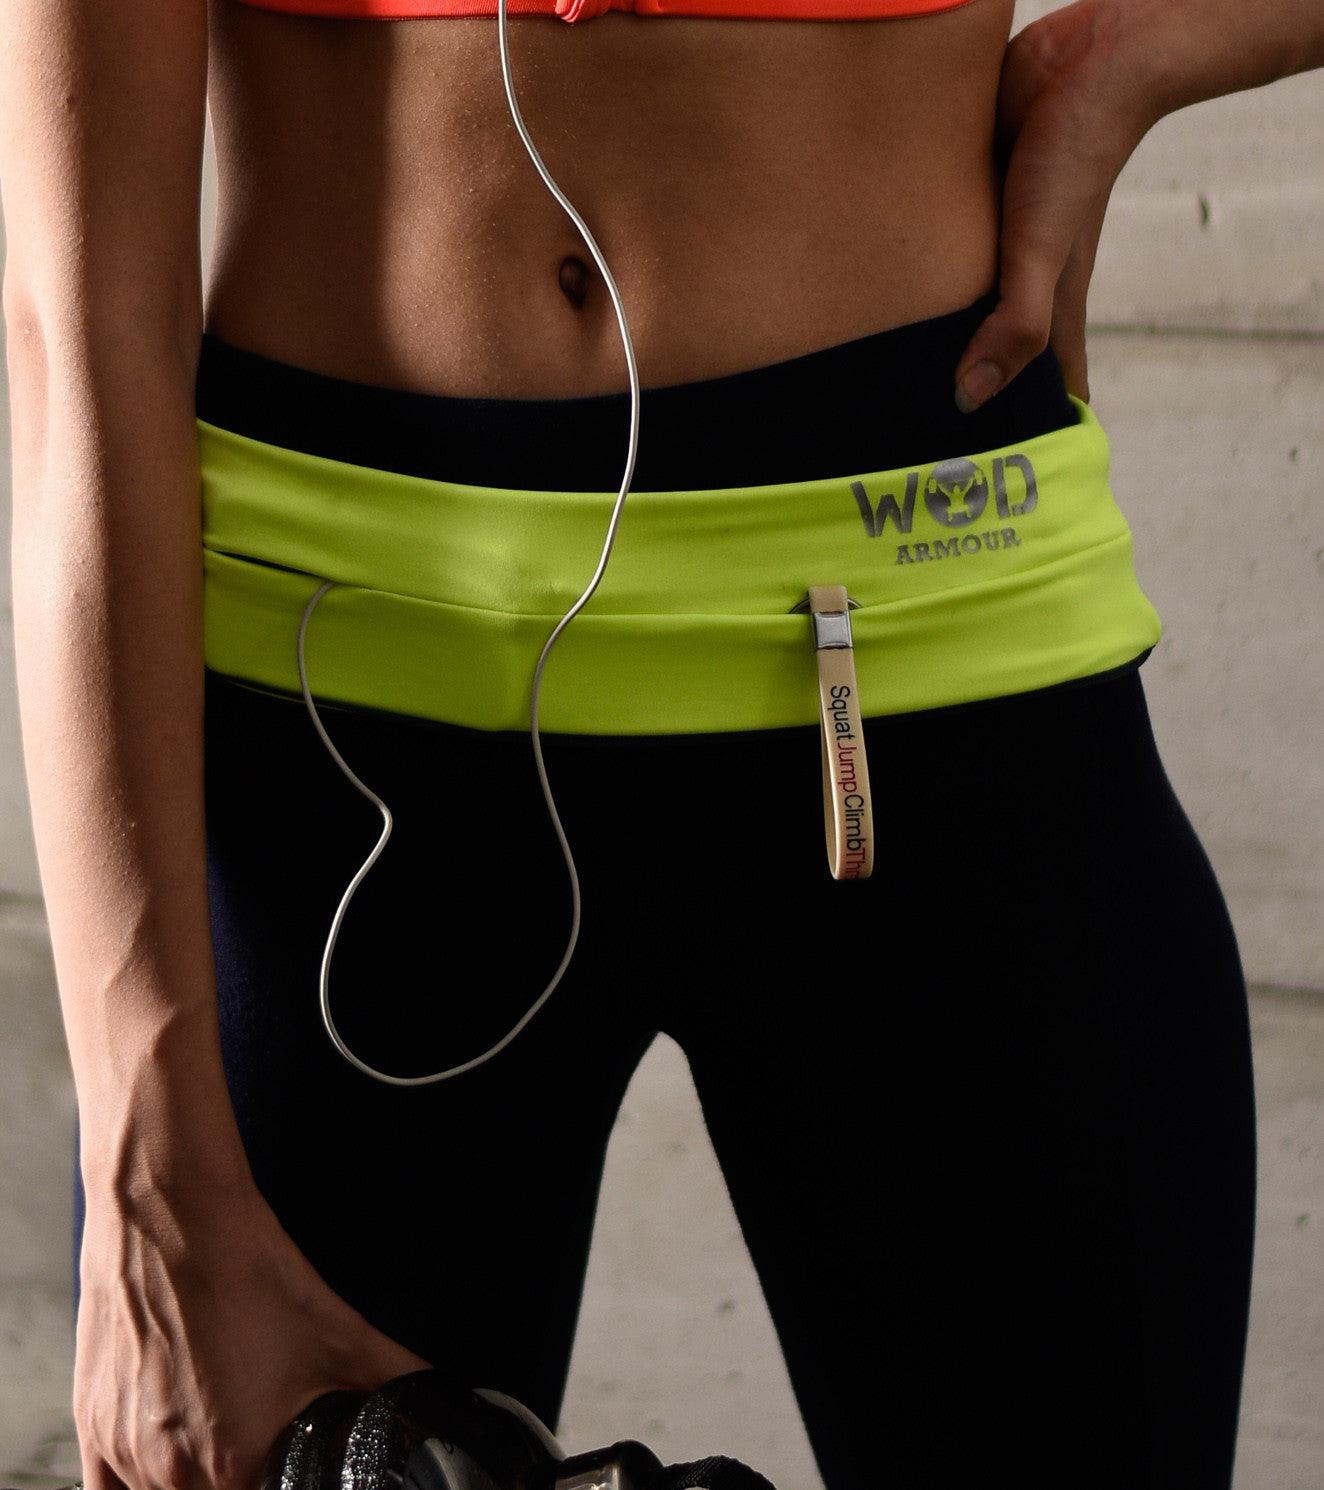 Running/Travelling waist belt – wodarmour